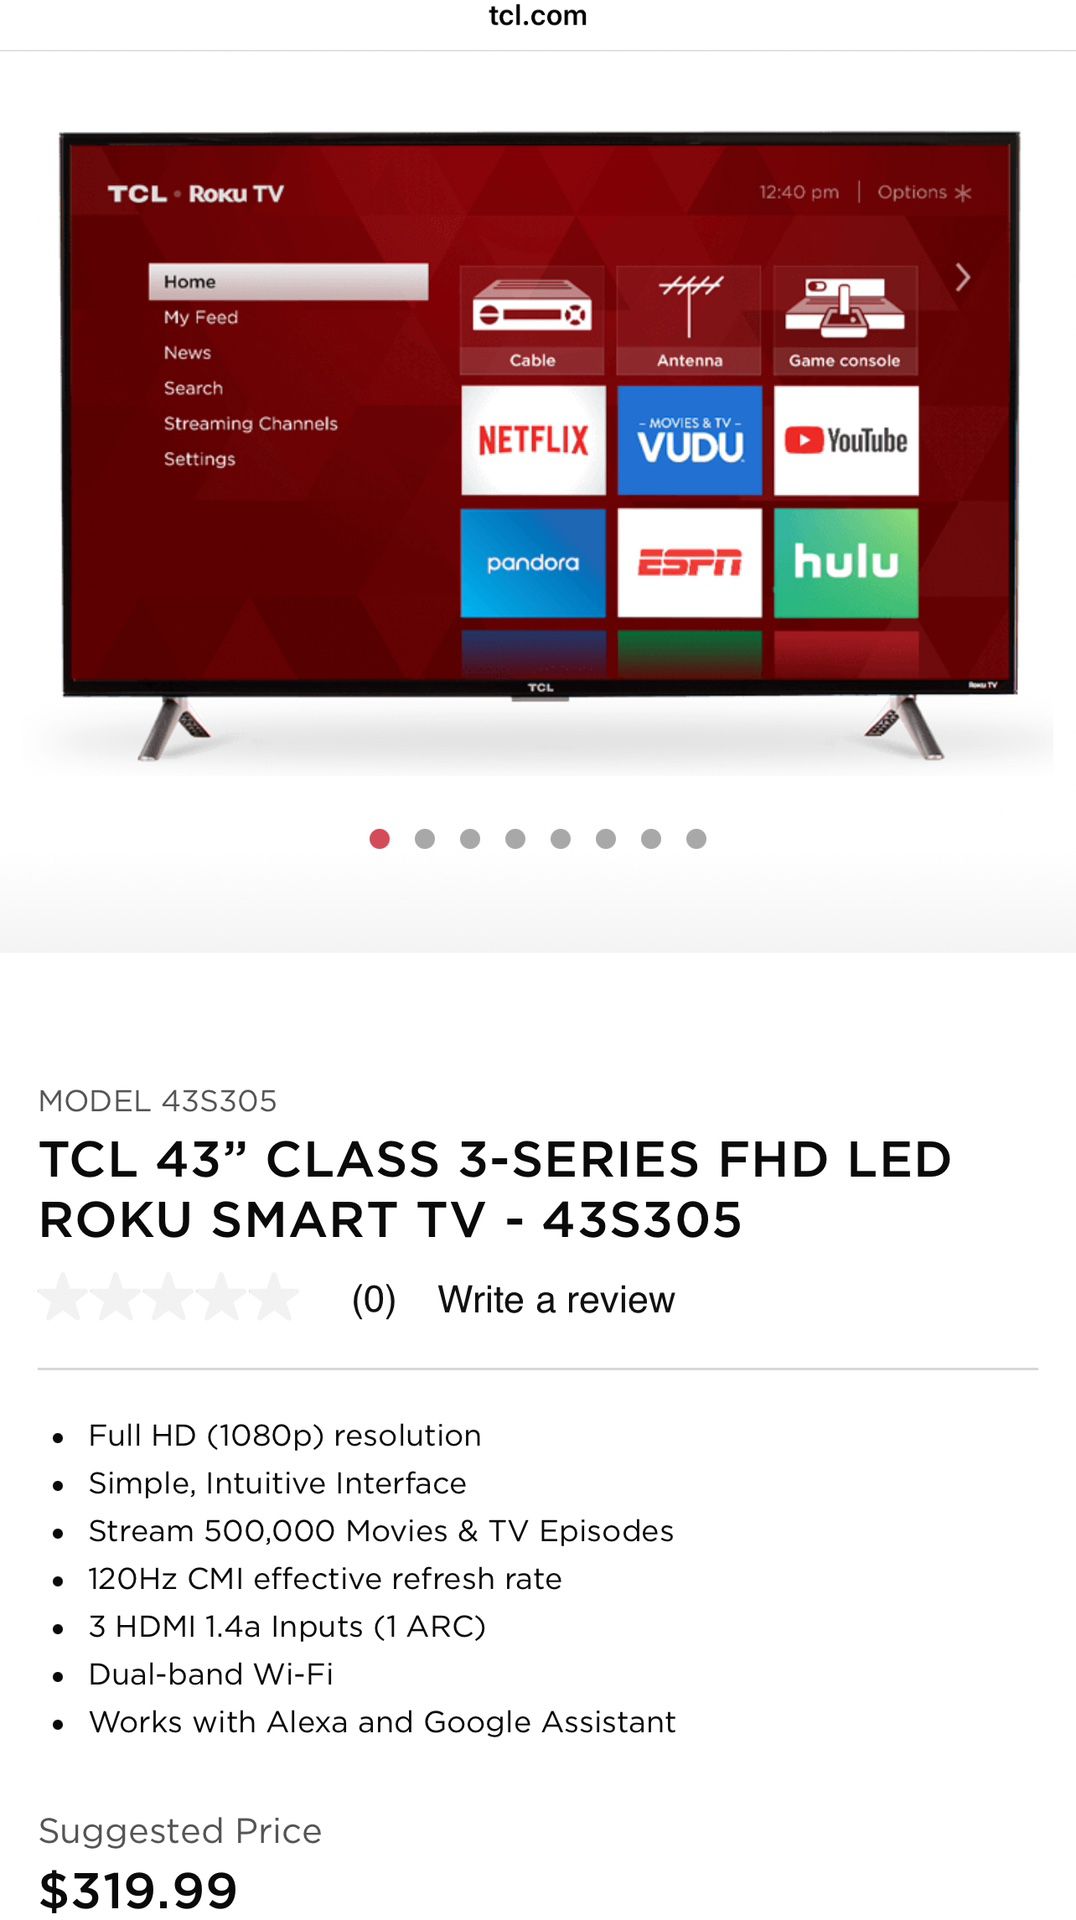 TCL 43" FHD LED ROKU SMART TV - Like New